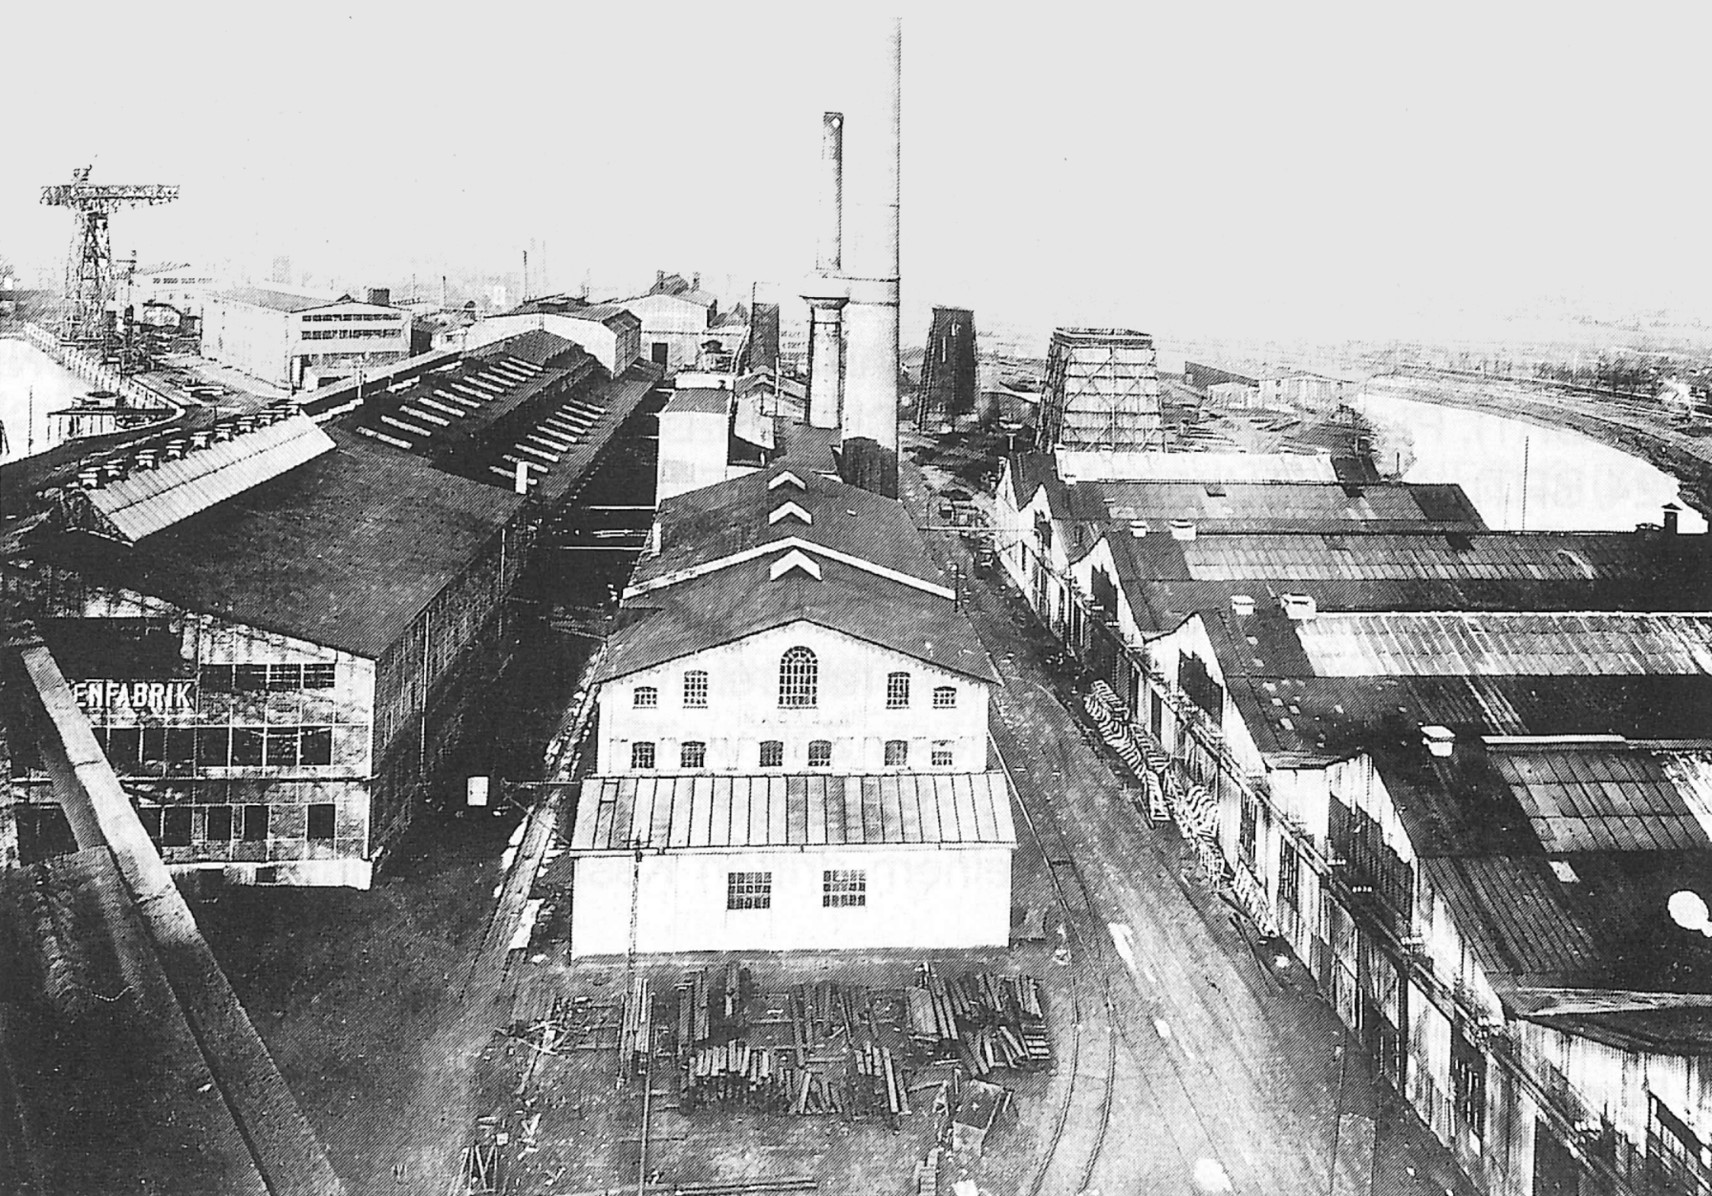 Workshops of Tecklenborg shipyard, Bremerhaven, Germany, 1925